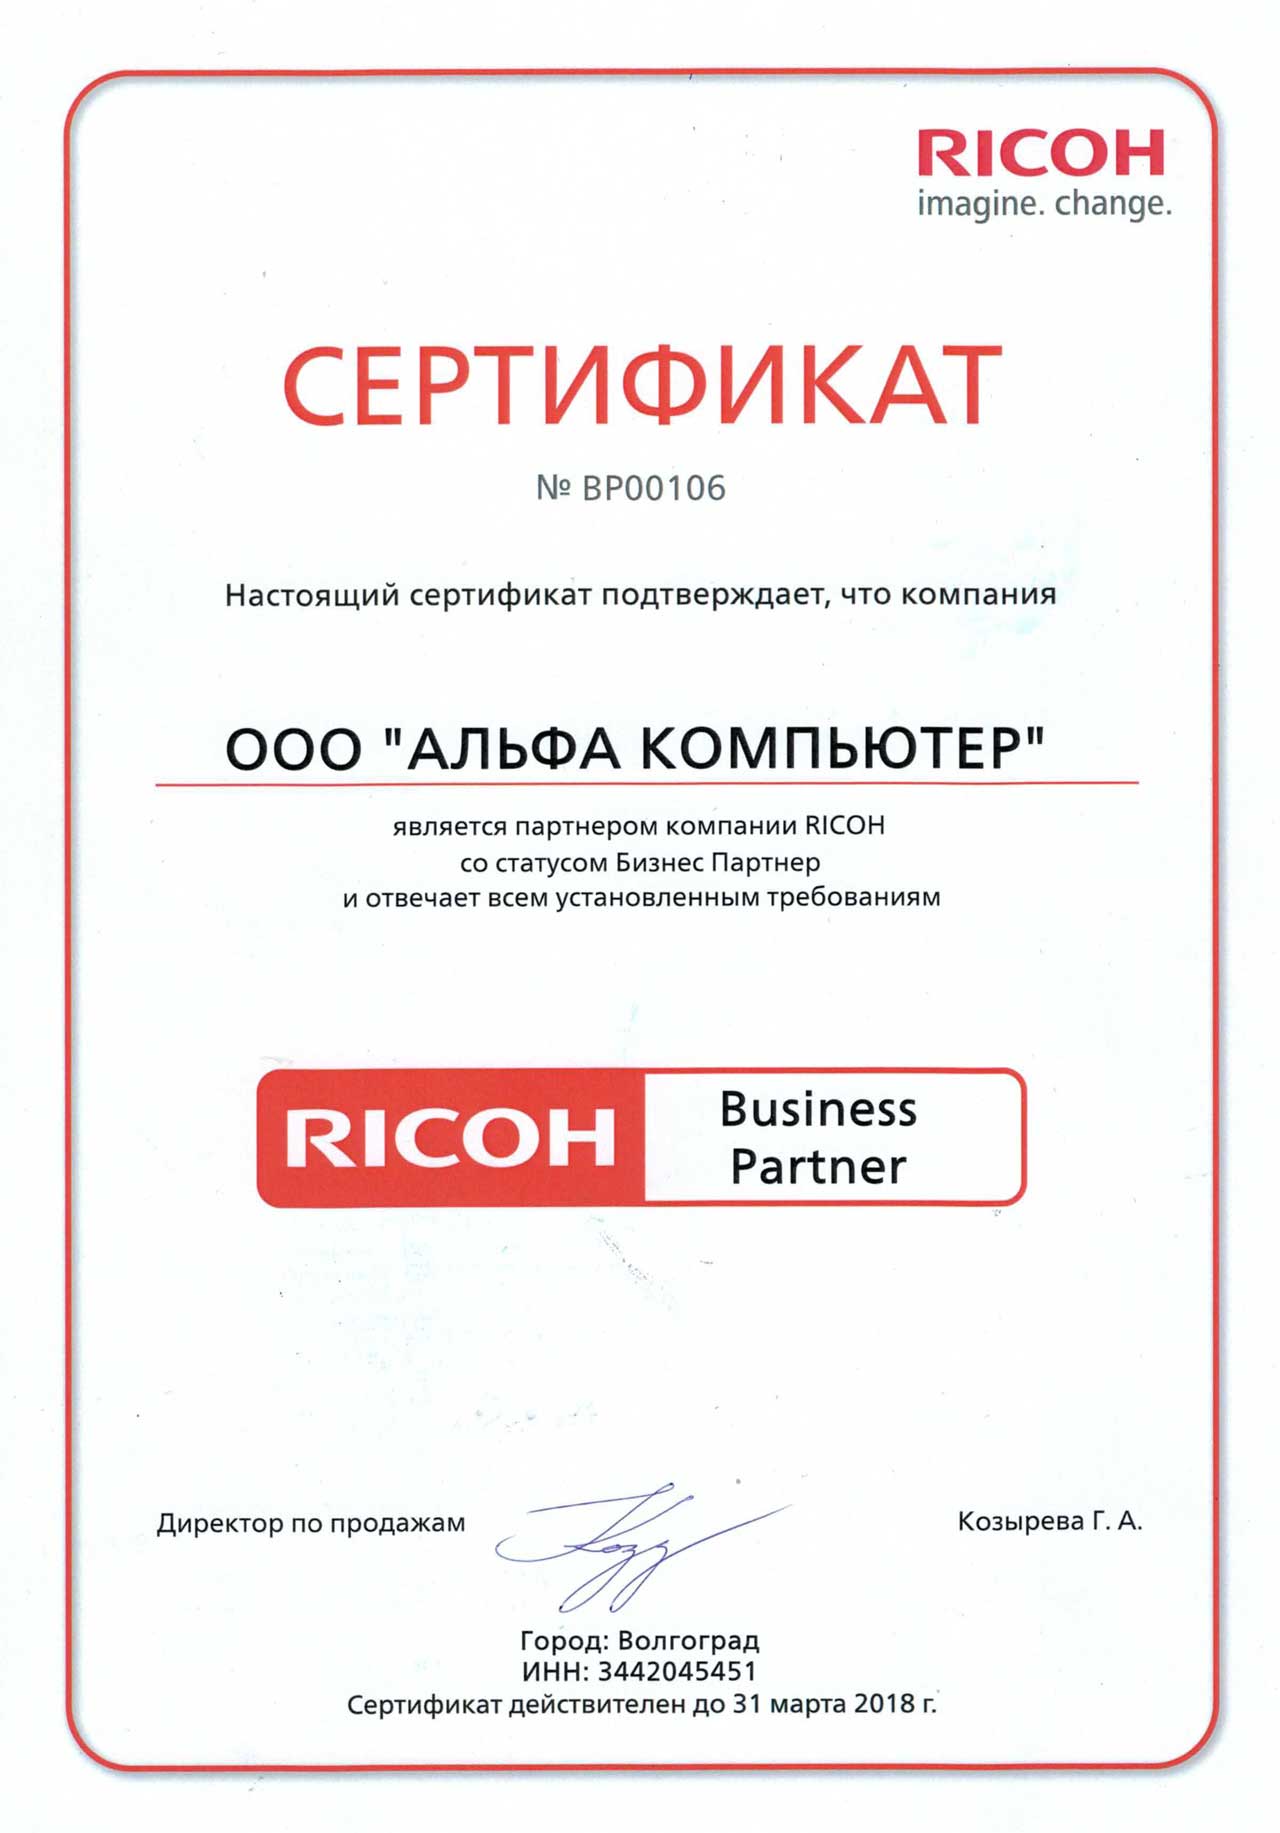 Сертификат бизнес партнера Ricoh